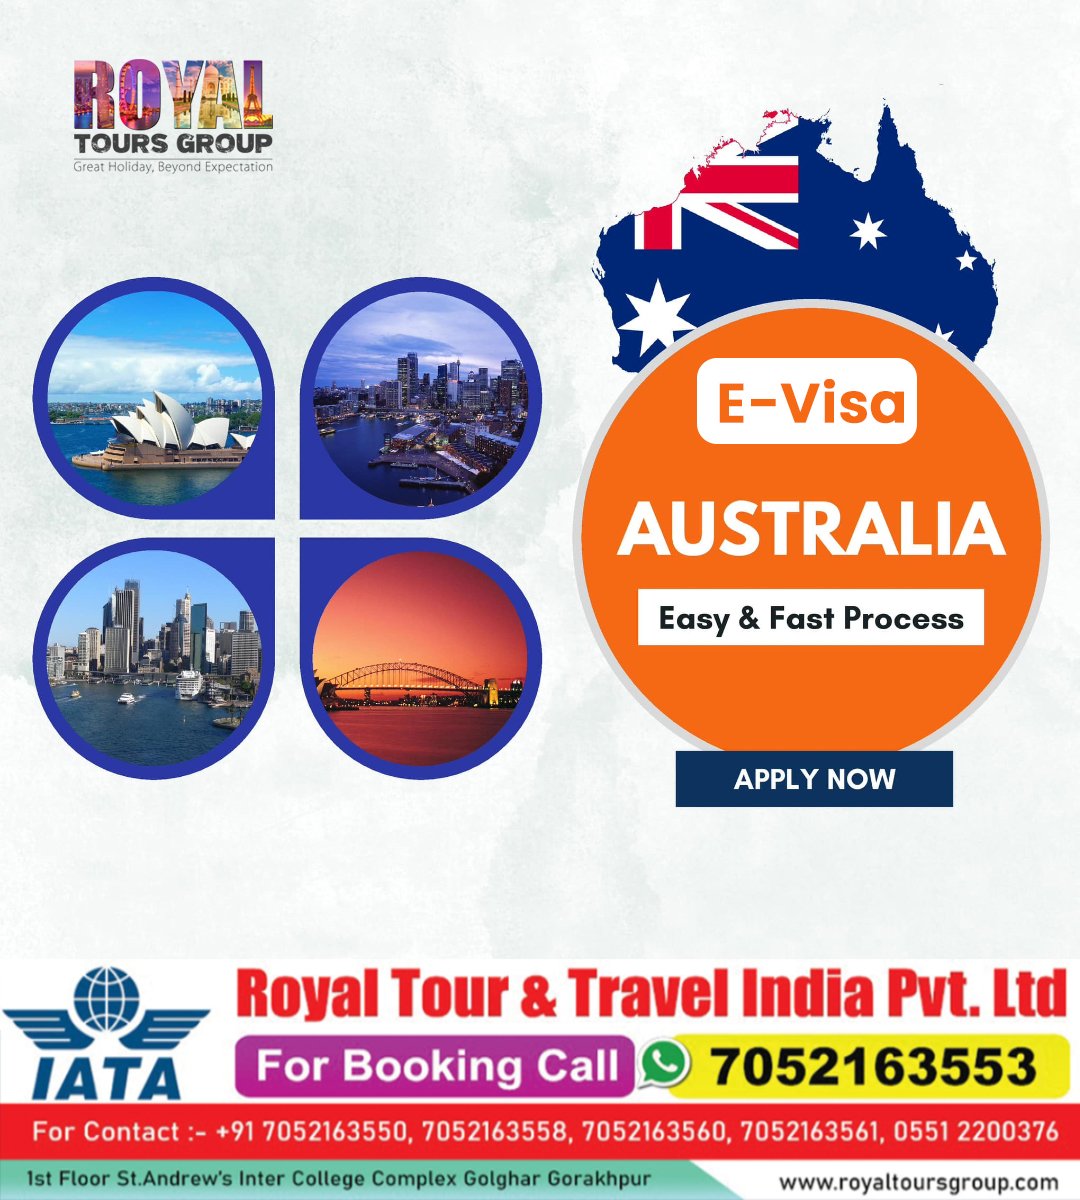 For Booking Call :- 070521 63553
-----------------------------------------
info@royaltoursgroup.com
royaltoursgroup.com
#royalholidaysgorakhpur
#thinkdubaithinkroyaltour
#travelagent #travel #tourism #australia #australiavisa #australiavisagrant #visaservices #VISA